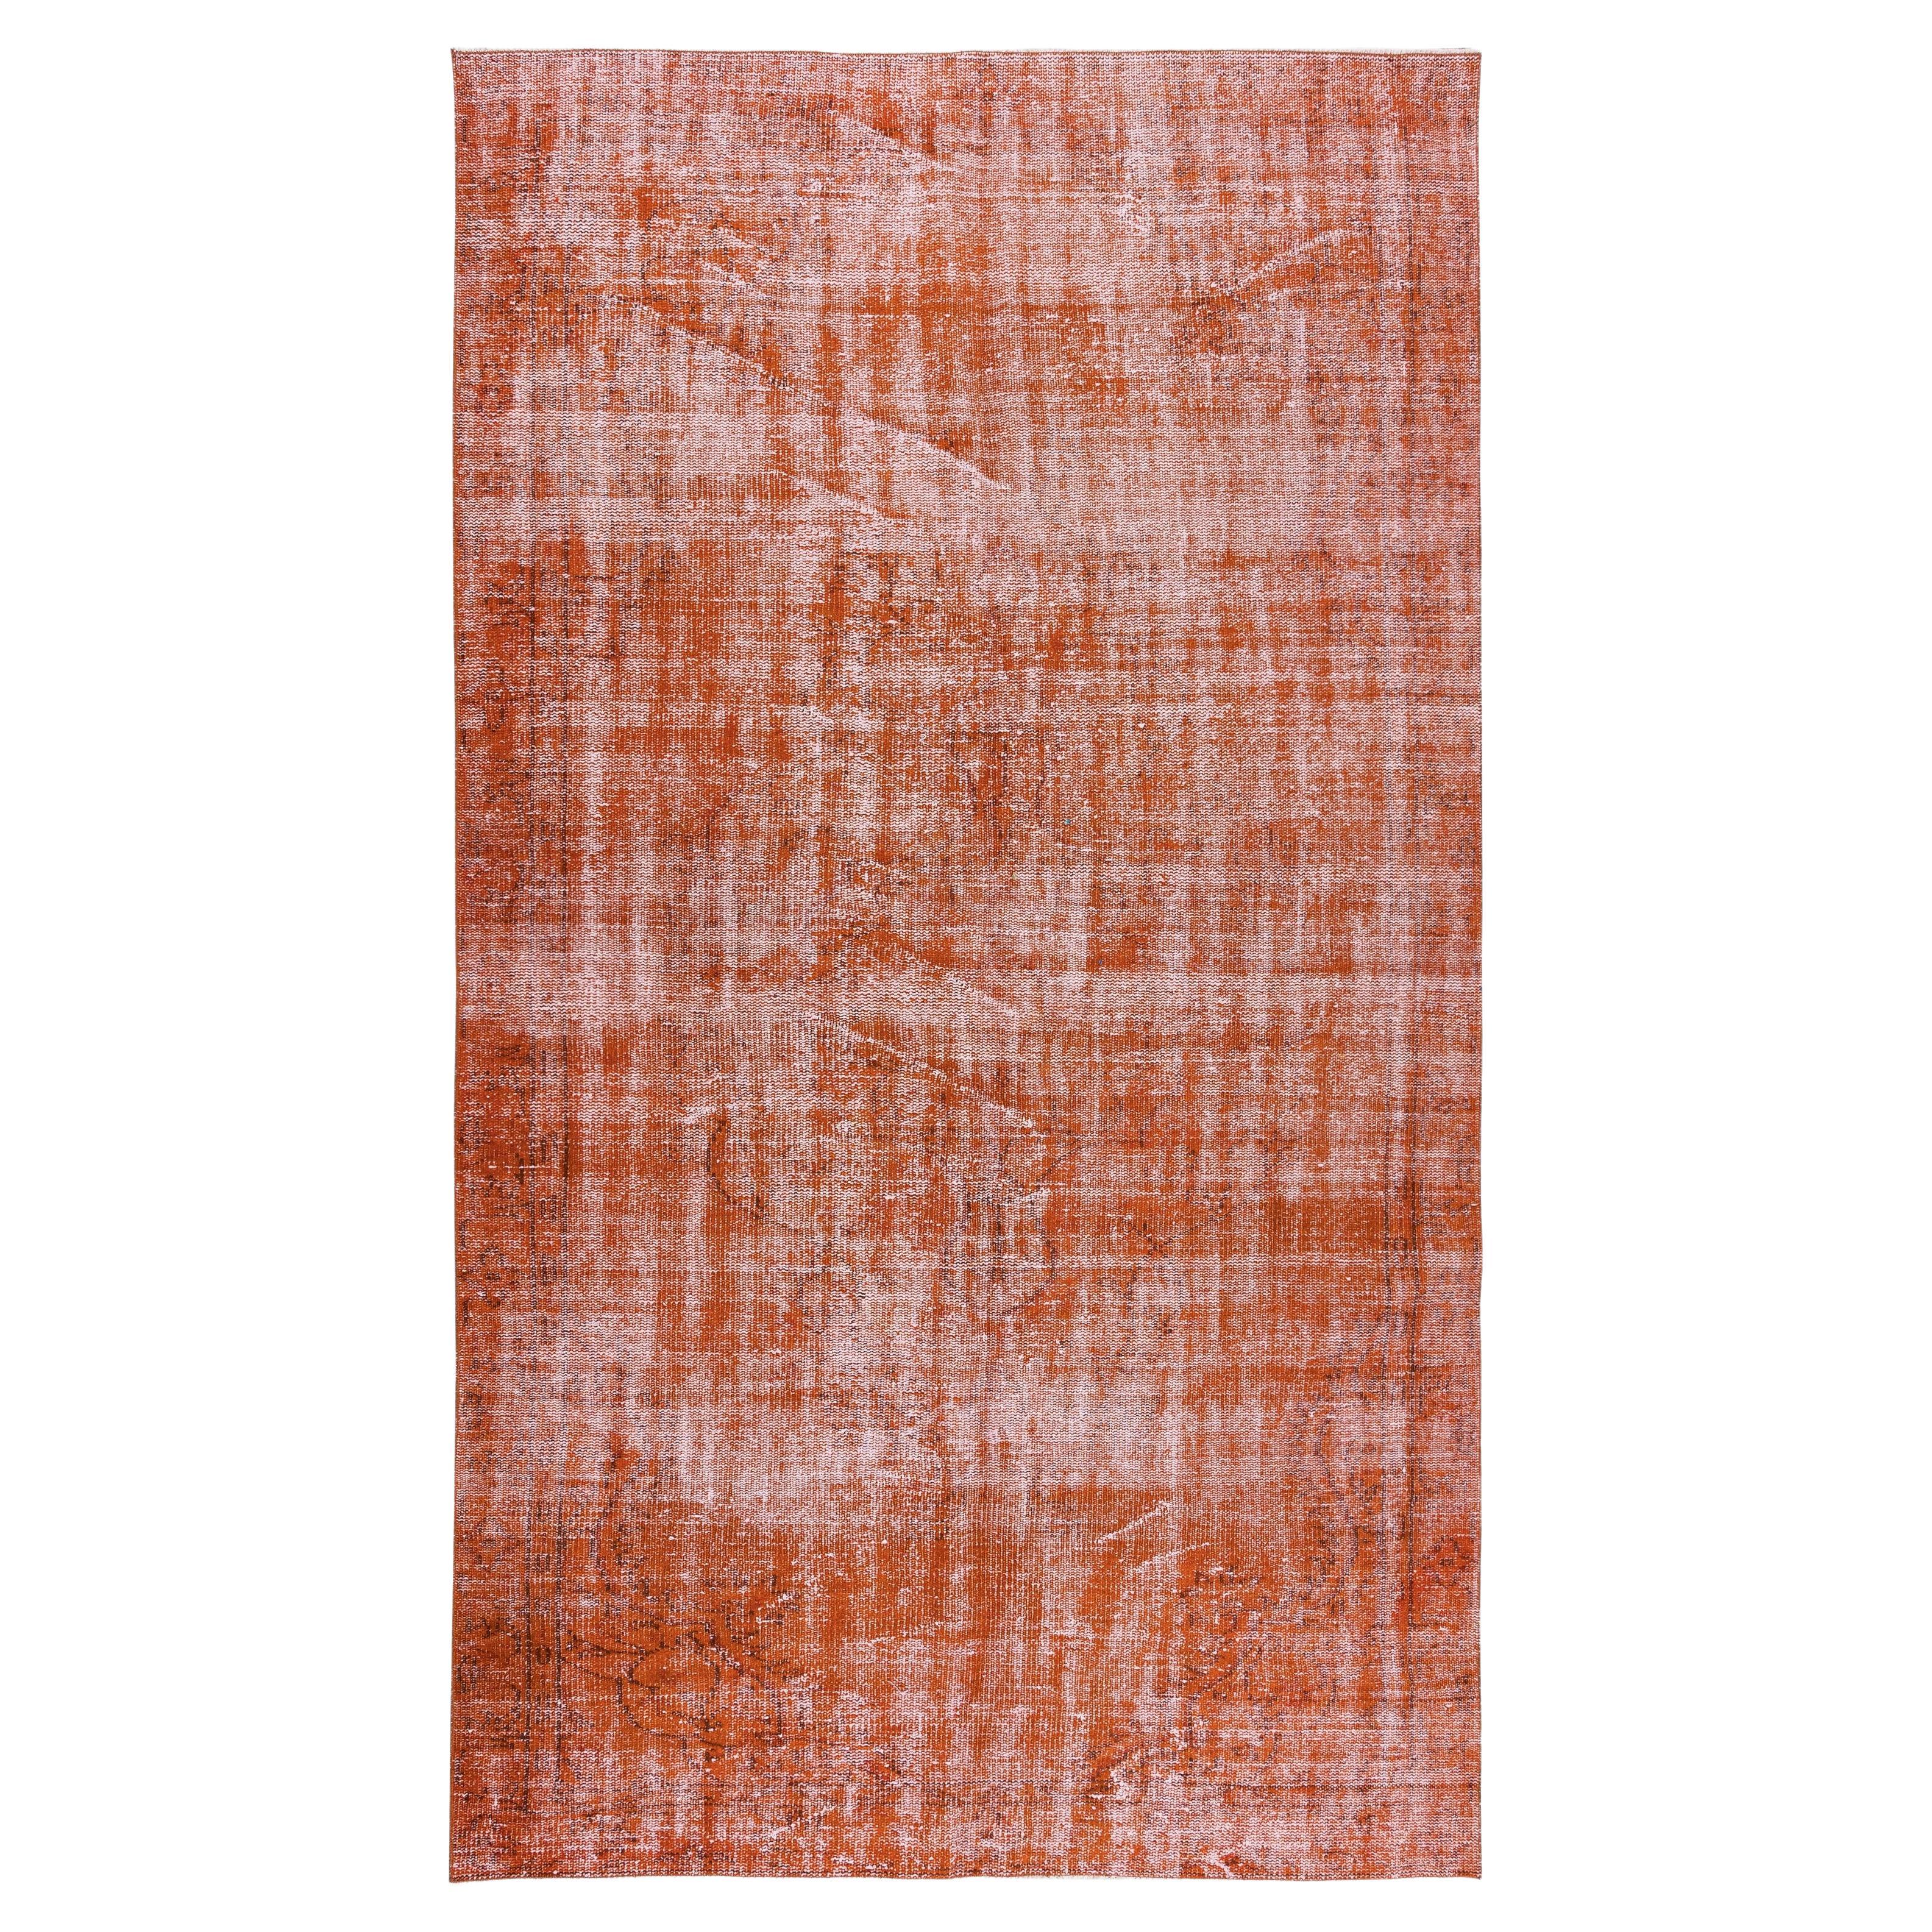 Tapis turc teinté à la main orange des années 1960, tapis fait à la main pour intérieur moderne